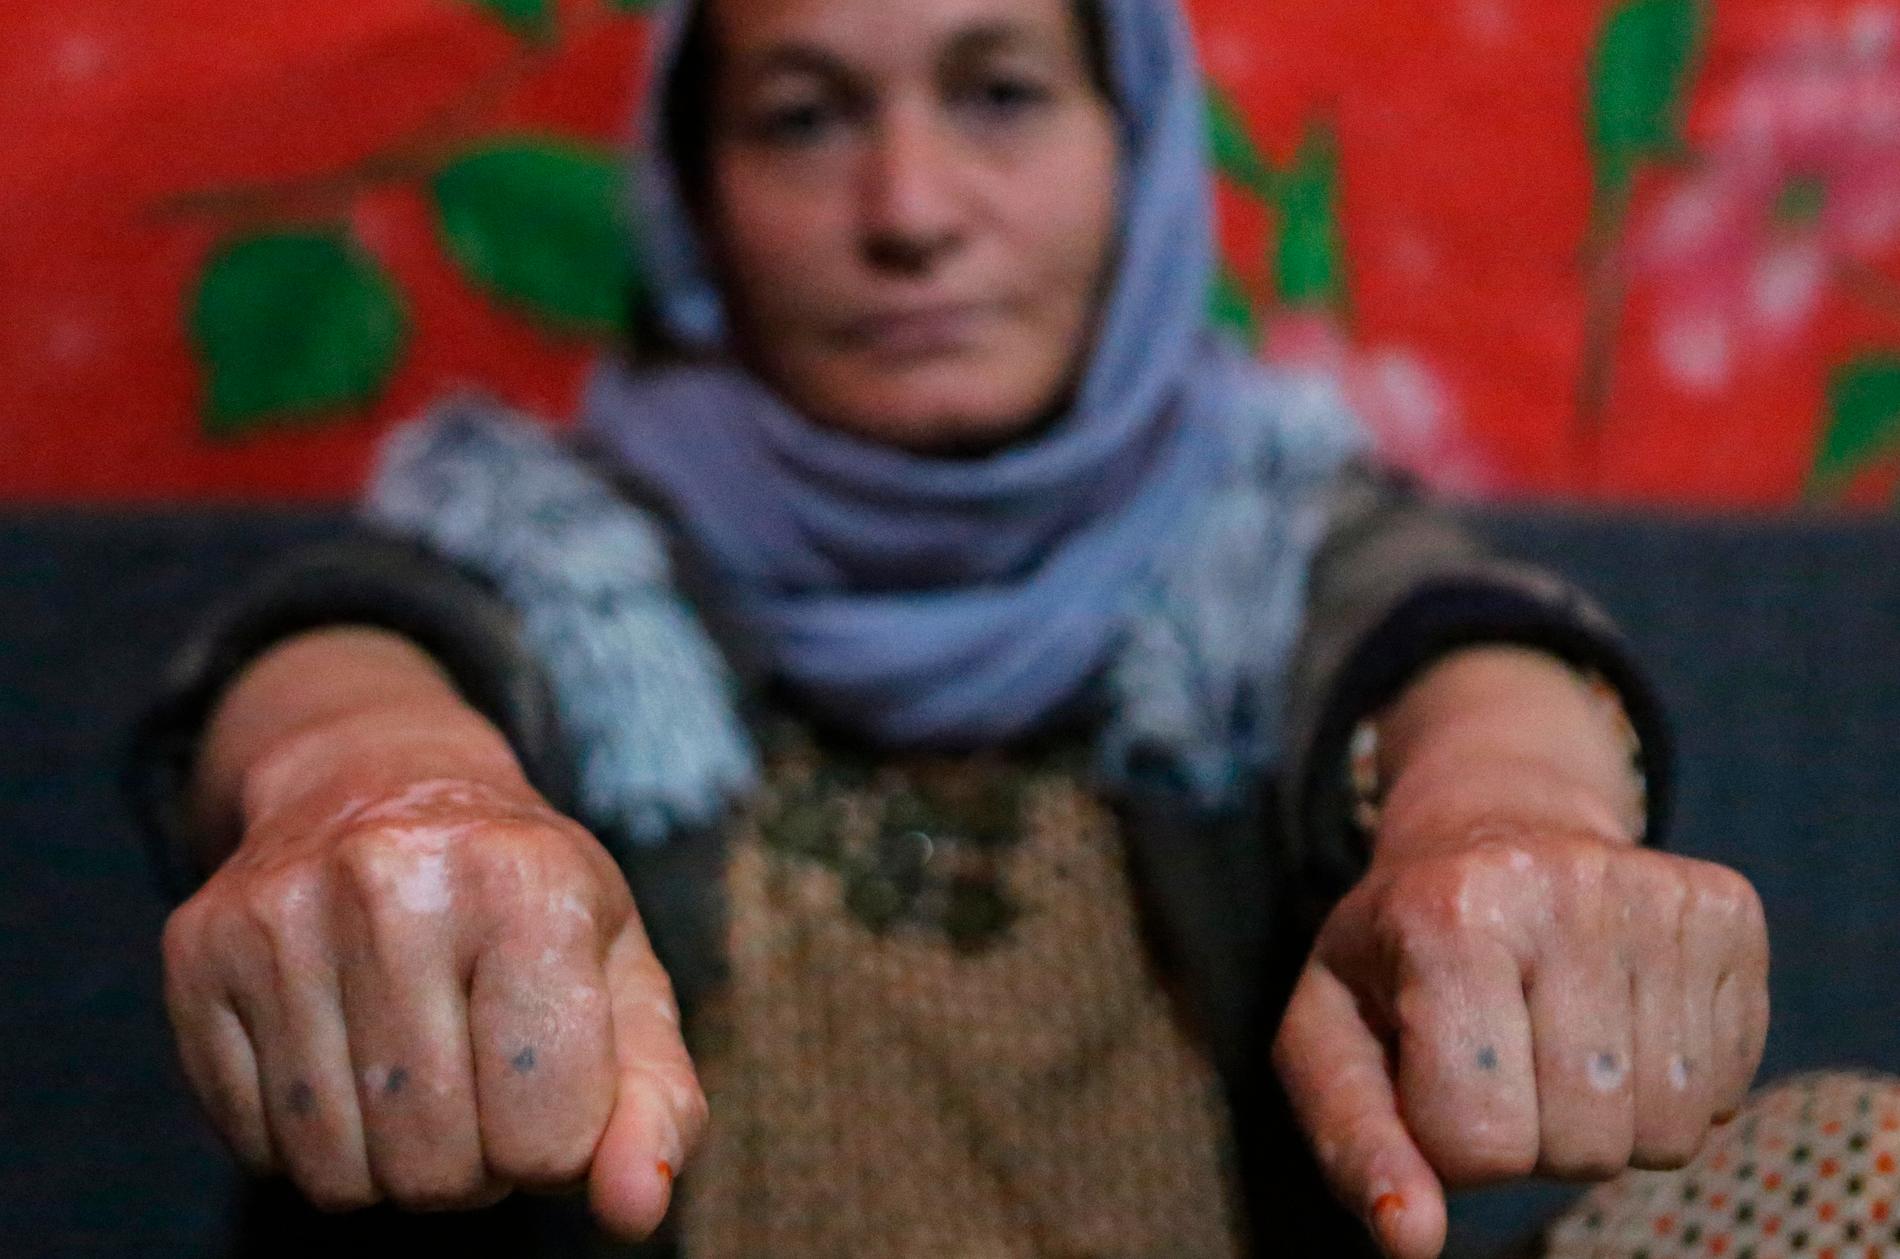 Baseh Hammo är en av många yazidiska kvinnor som utsatts för IS våld. Skadorna på hennes händer fick hon när en IS-anhängare tvingade henne att trycka knogarna mot kokhet asfalt.